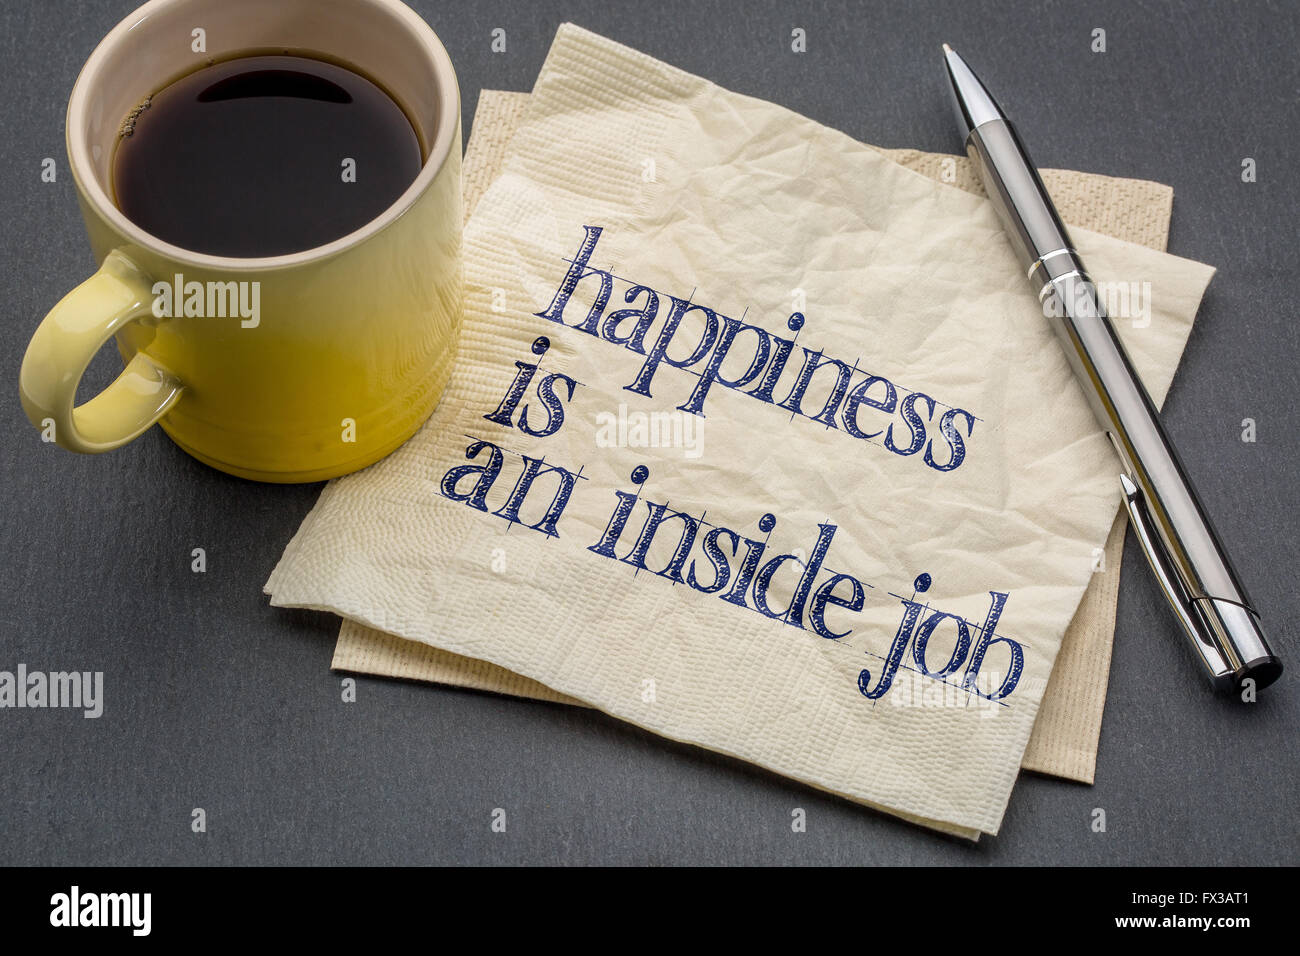 Glück ist ein Inside Job - inspirierende Handschrift auf einer Serviette mit Tasse Kaffee vor grauen Schiefer Stein Hintergrund Stockfoto